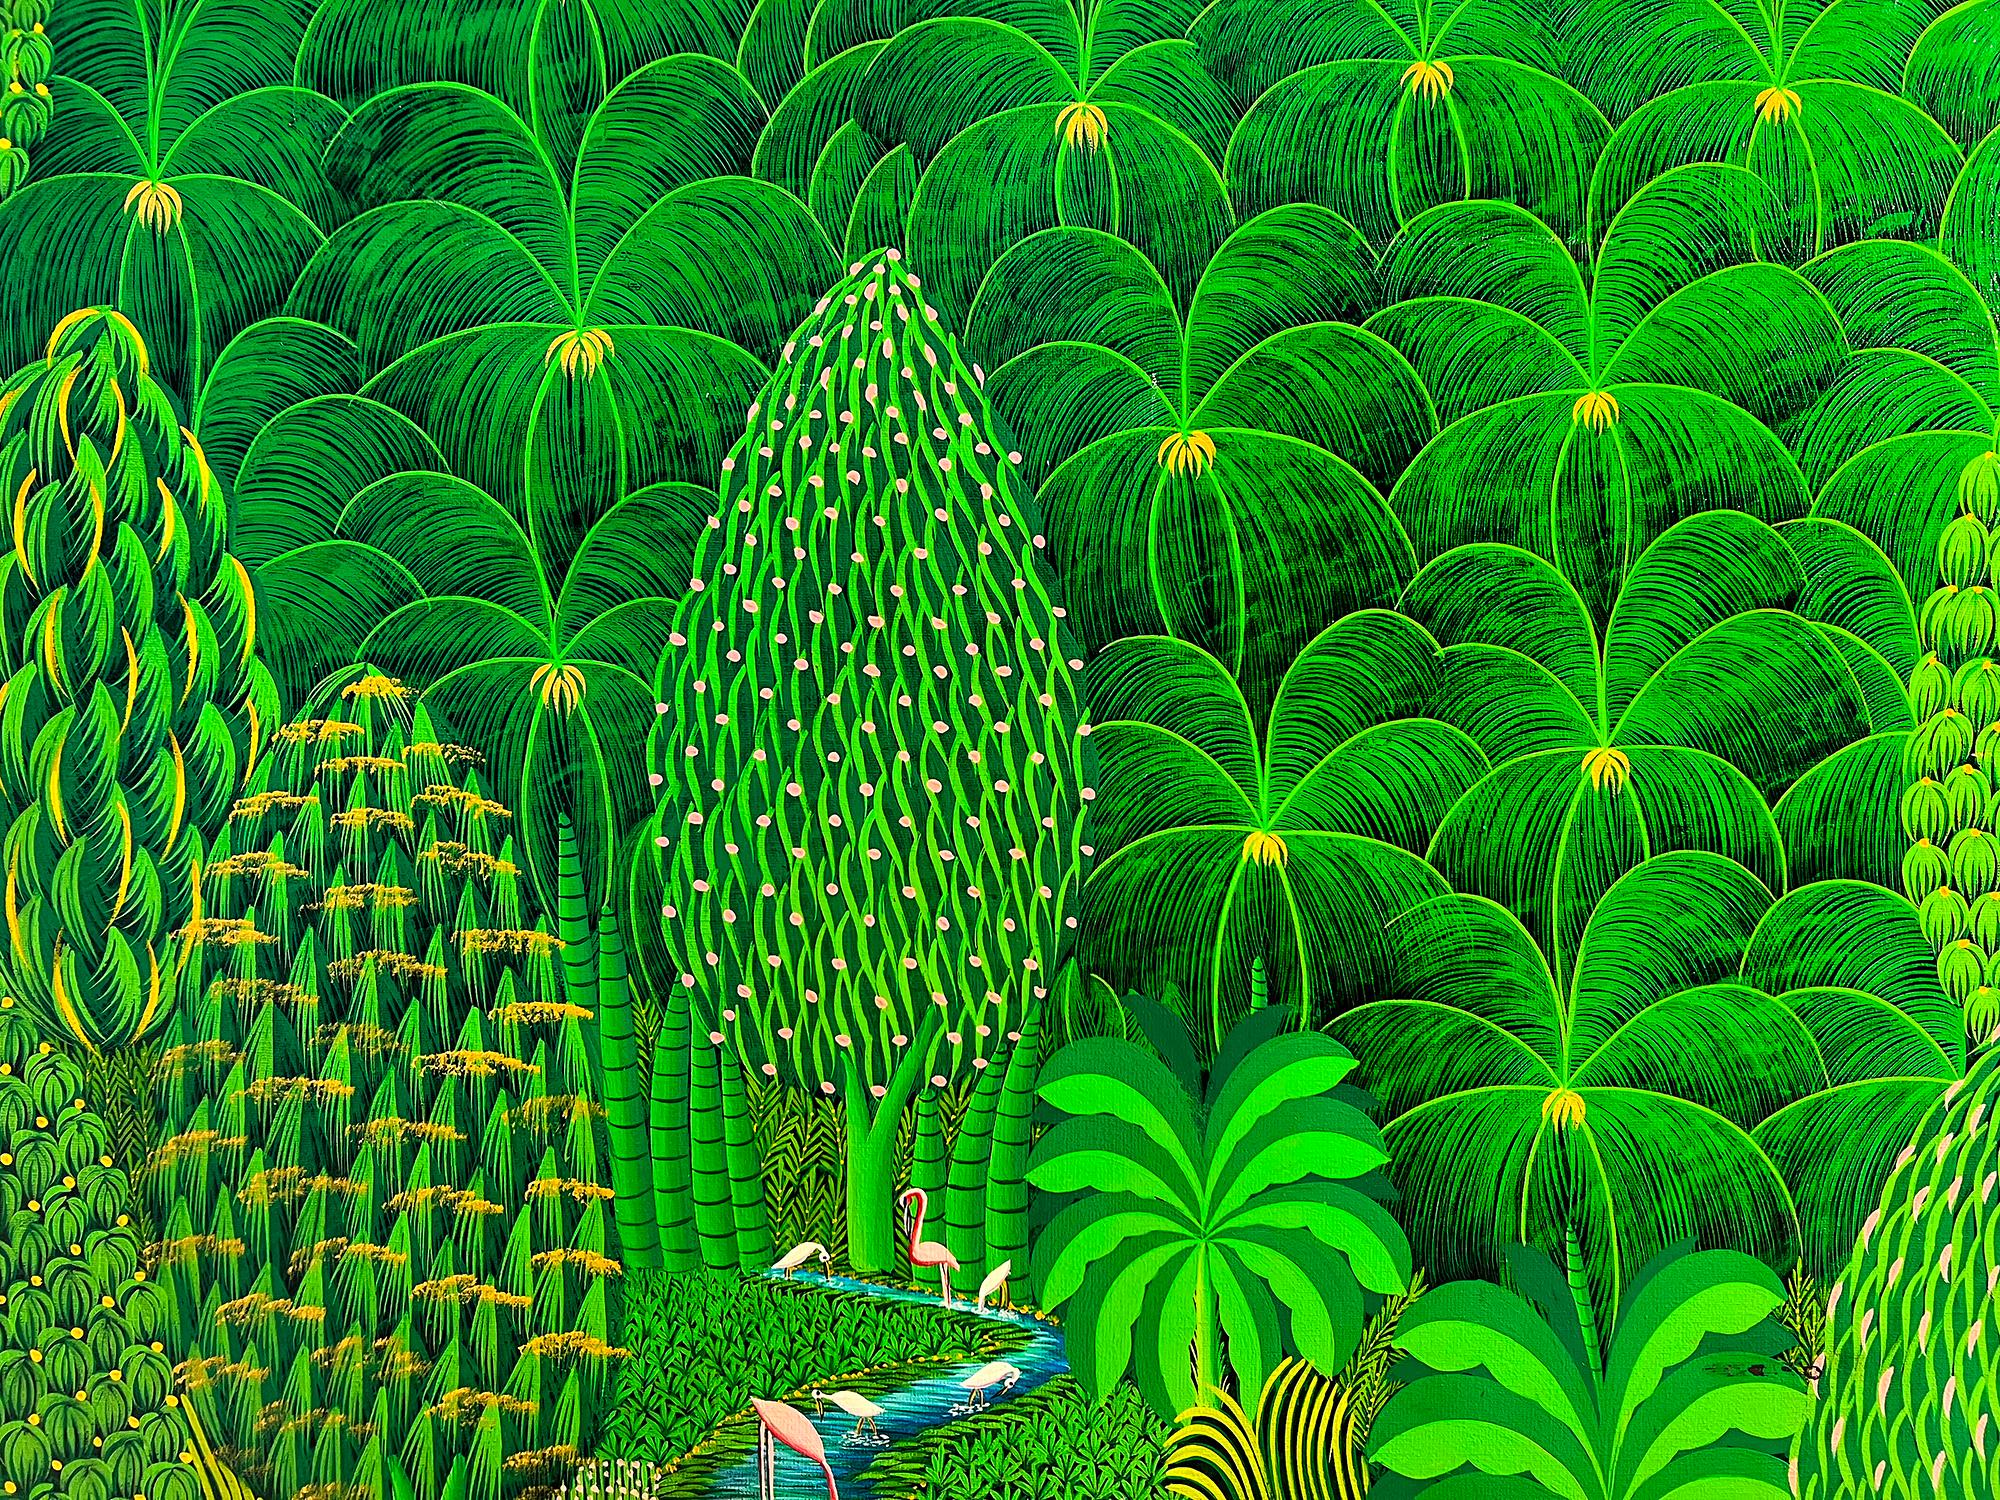 Das Paradies wurde gefunden und befindet sich vor dem geistigen Auge des haitianischen Malers Henri-Robert Bresil.  Seine stilisierten Darstellungen einer grünen, von Paradiesvögeln bevölkerten Welt... Rosa Flamingos und weiße Reiher laden den